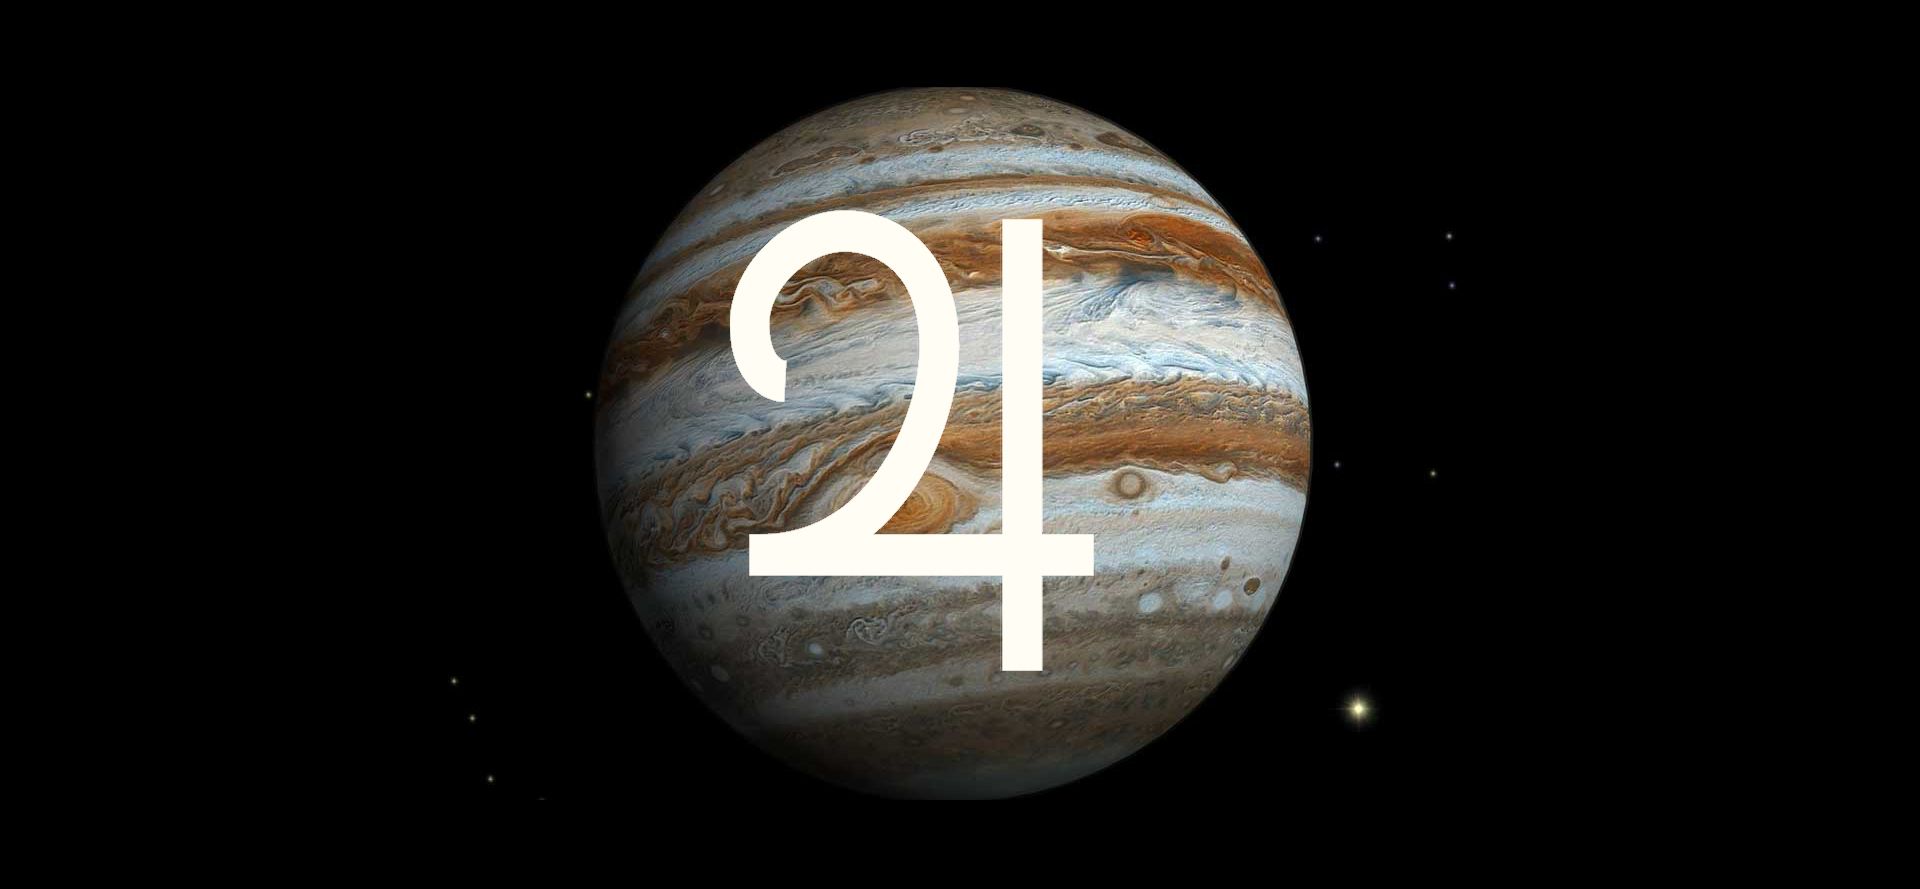 Jupiter planet and Jupiter sign.